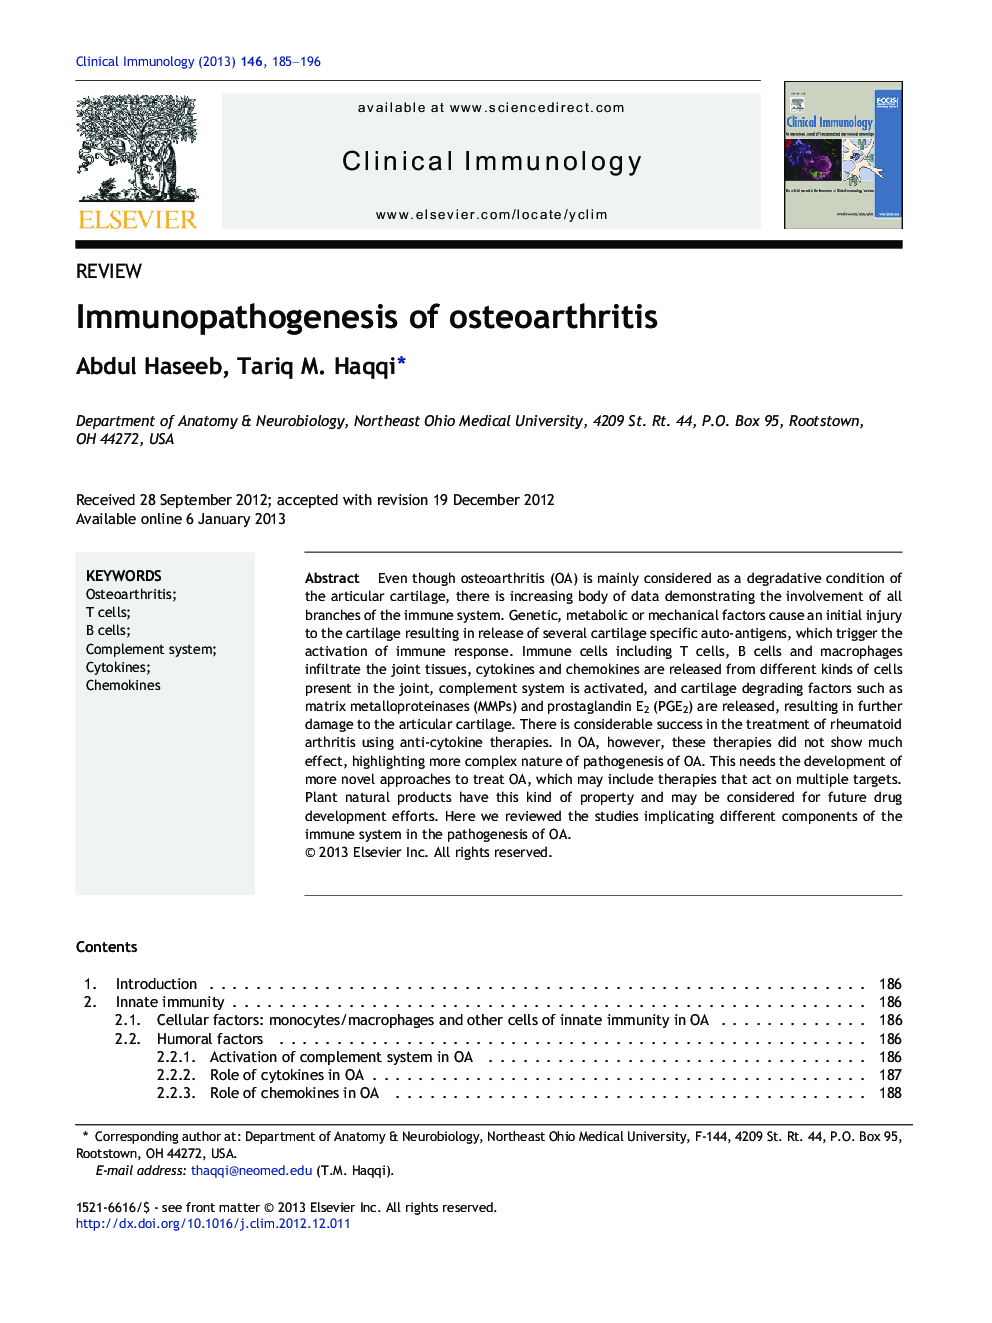 Immunopathogenesis of osteoarthritis